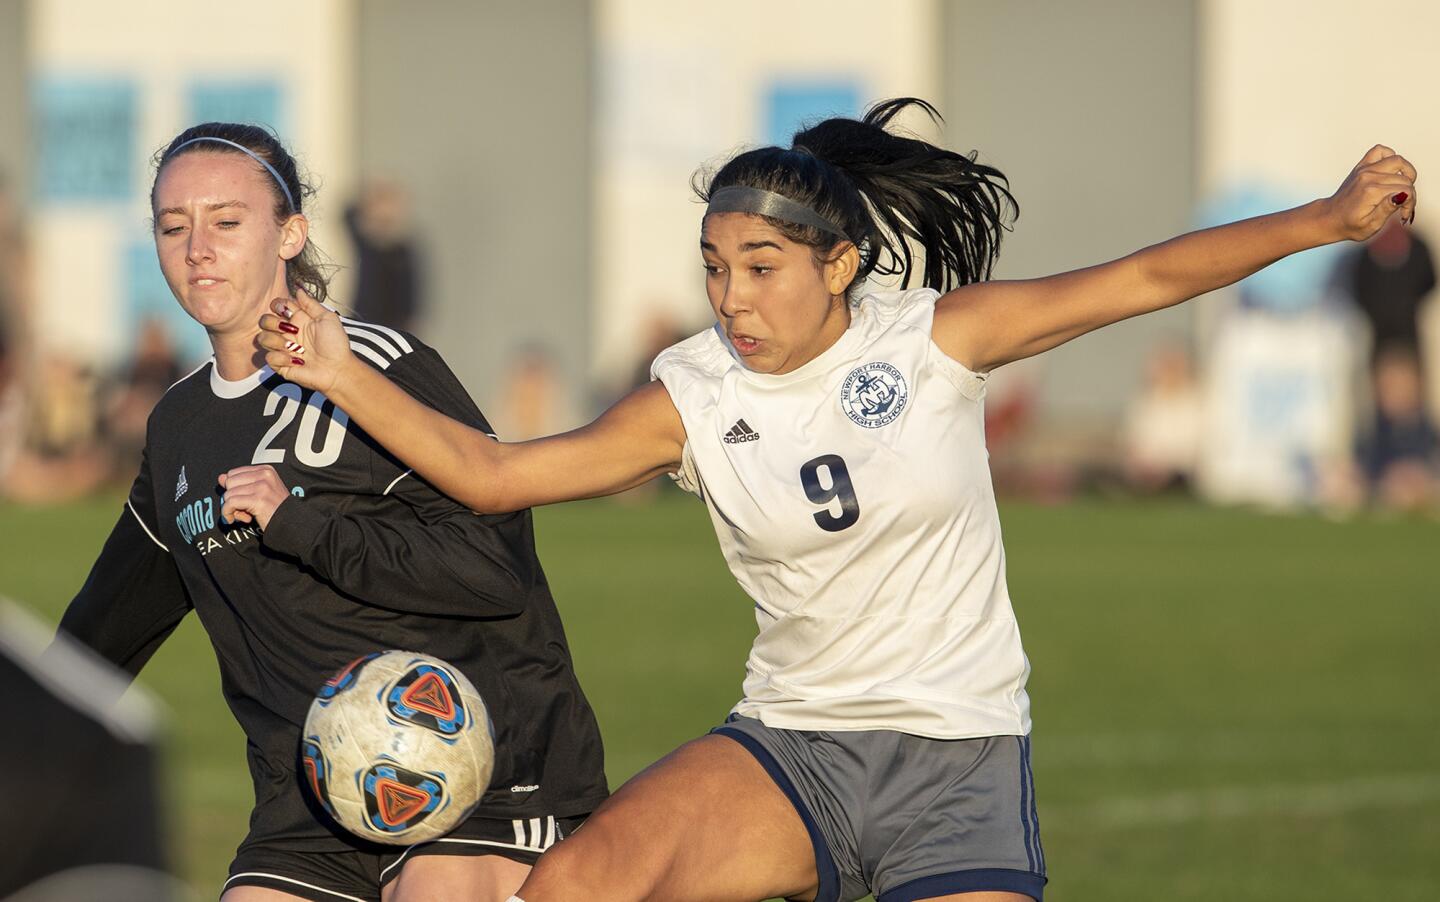 Photo Gallery: Newport Harbor vs. Corona del Mar in girls’ soccer